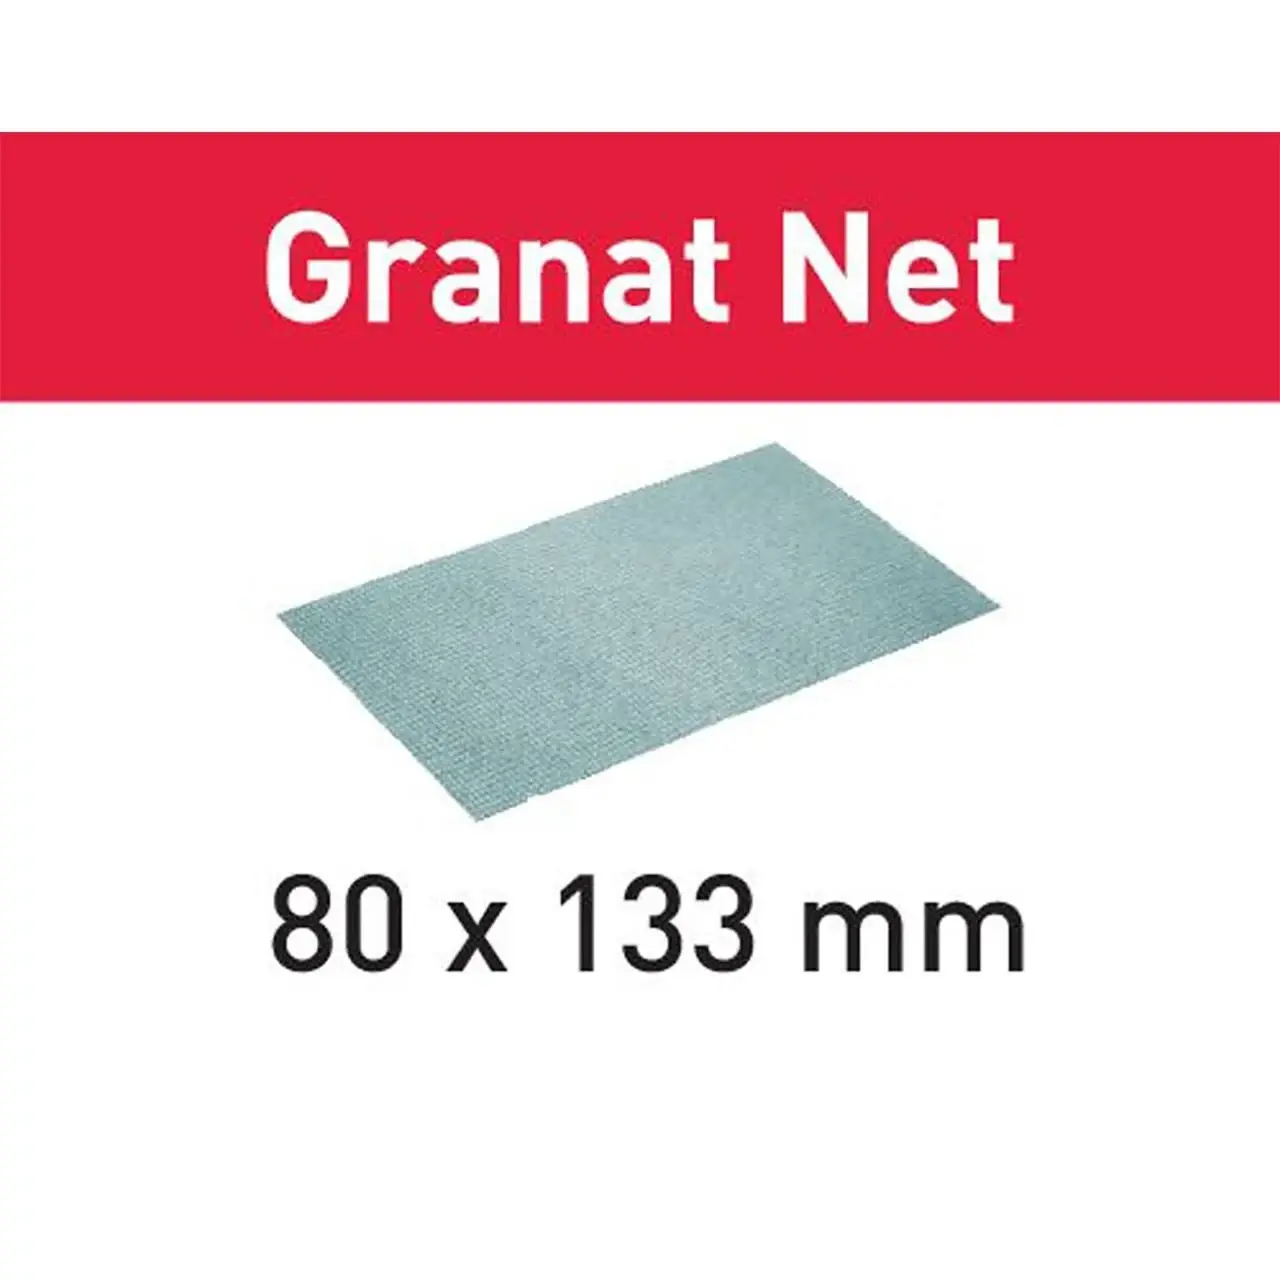 Festool STF 80x133 P80 gr NET/50 Schuurpapier Granat Net 203285